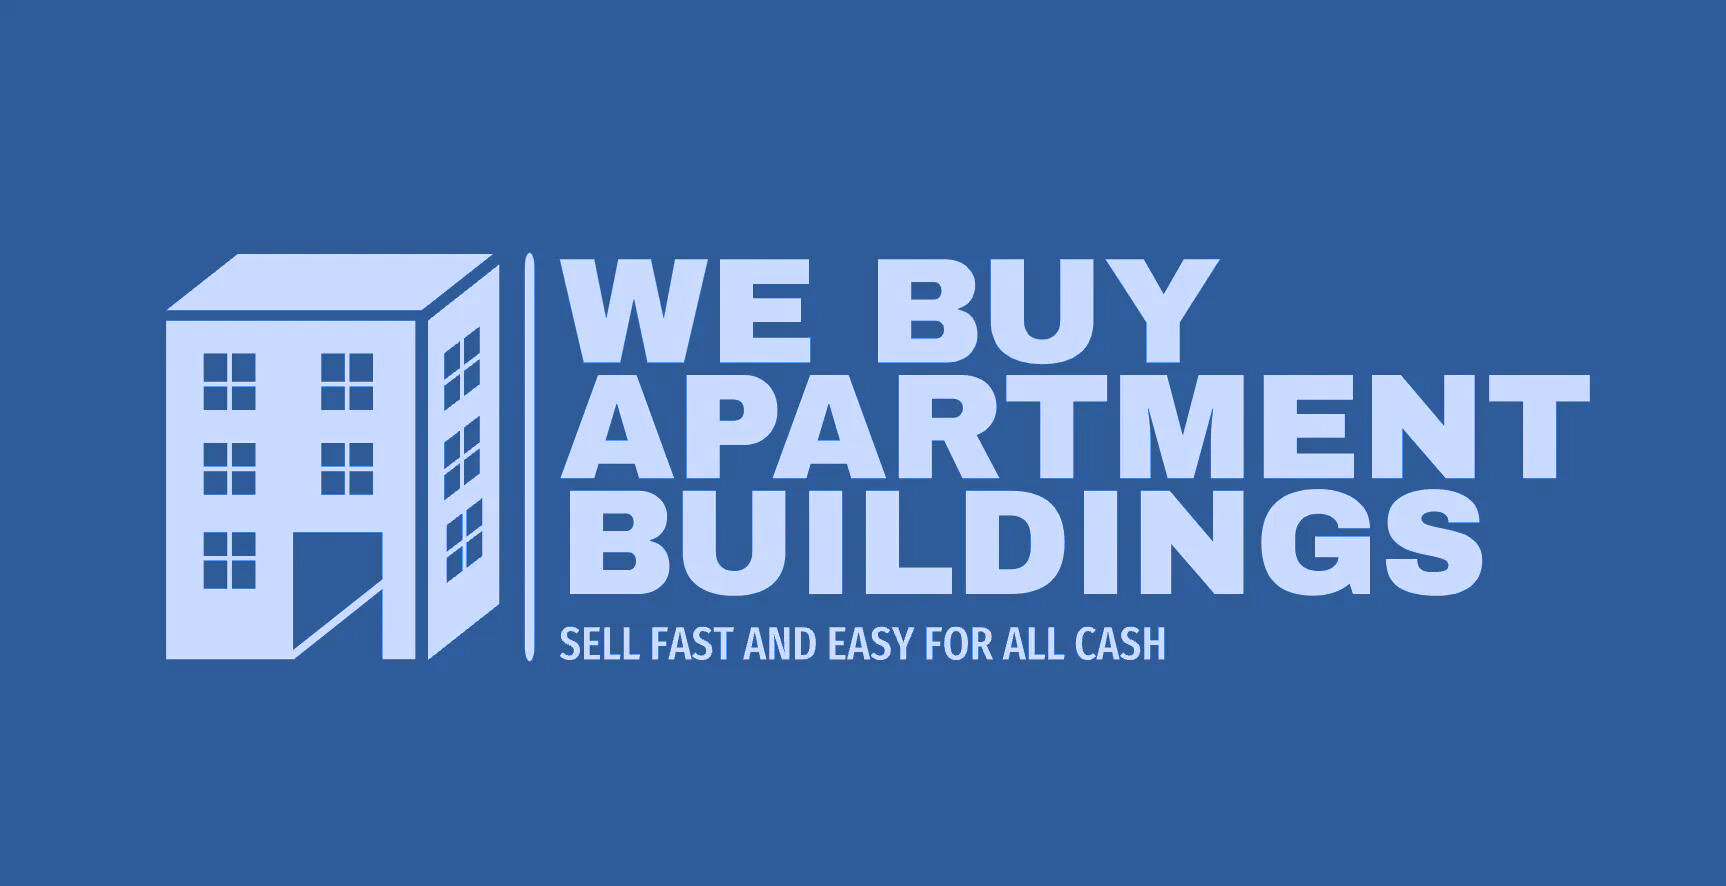 We Buy Apartment Buildings logo